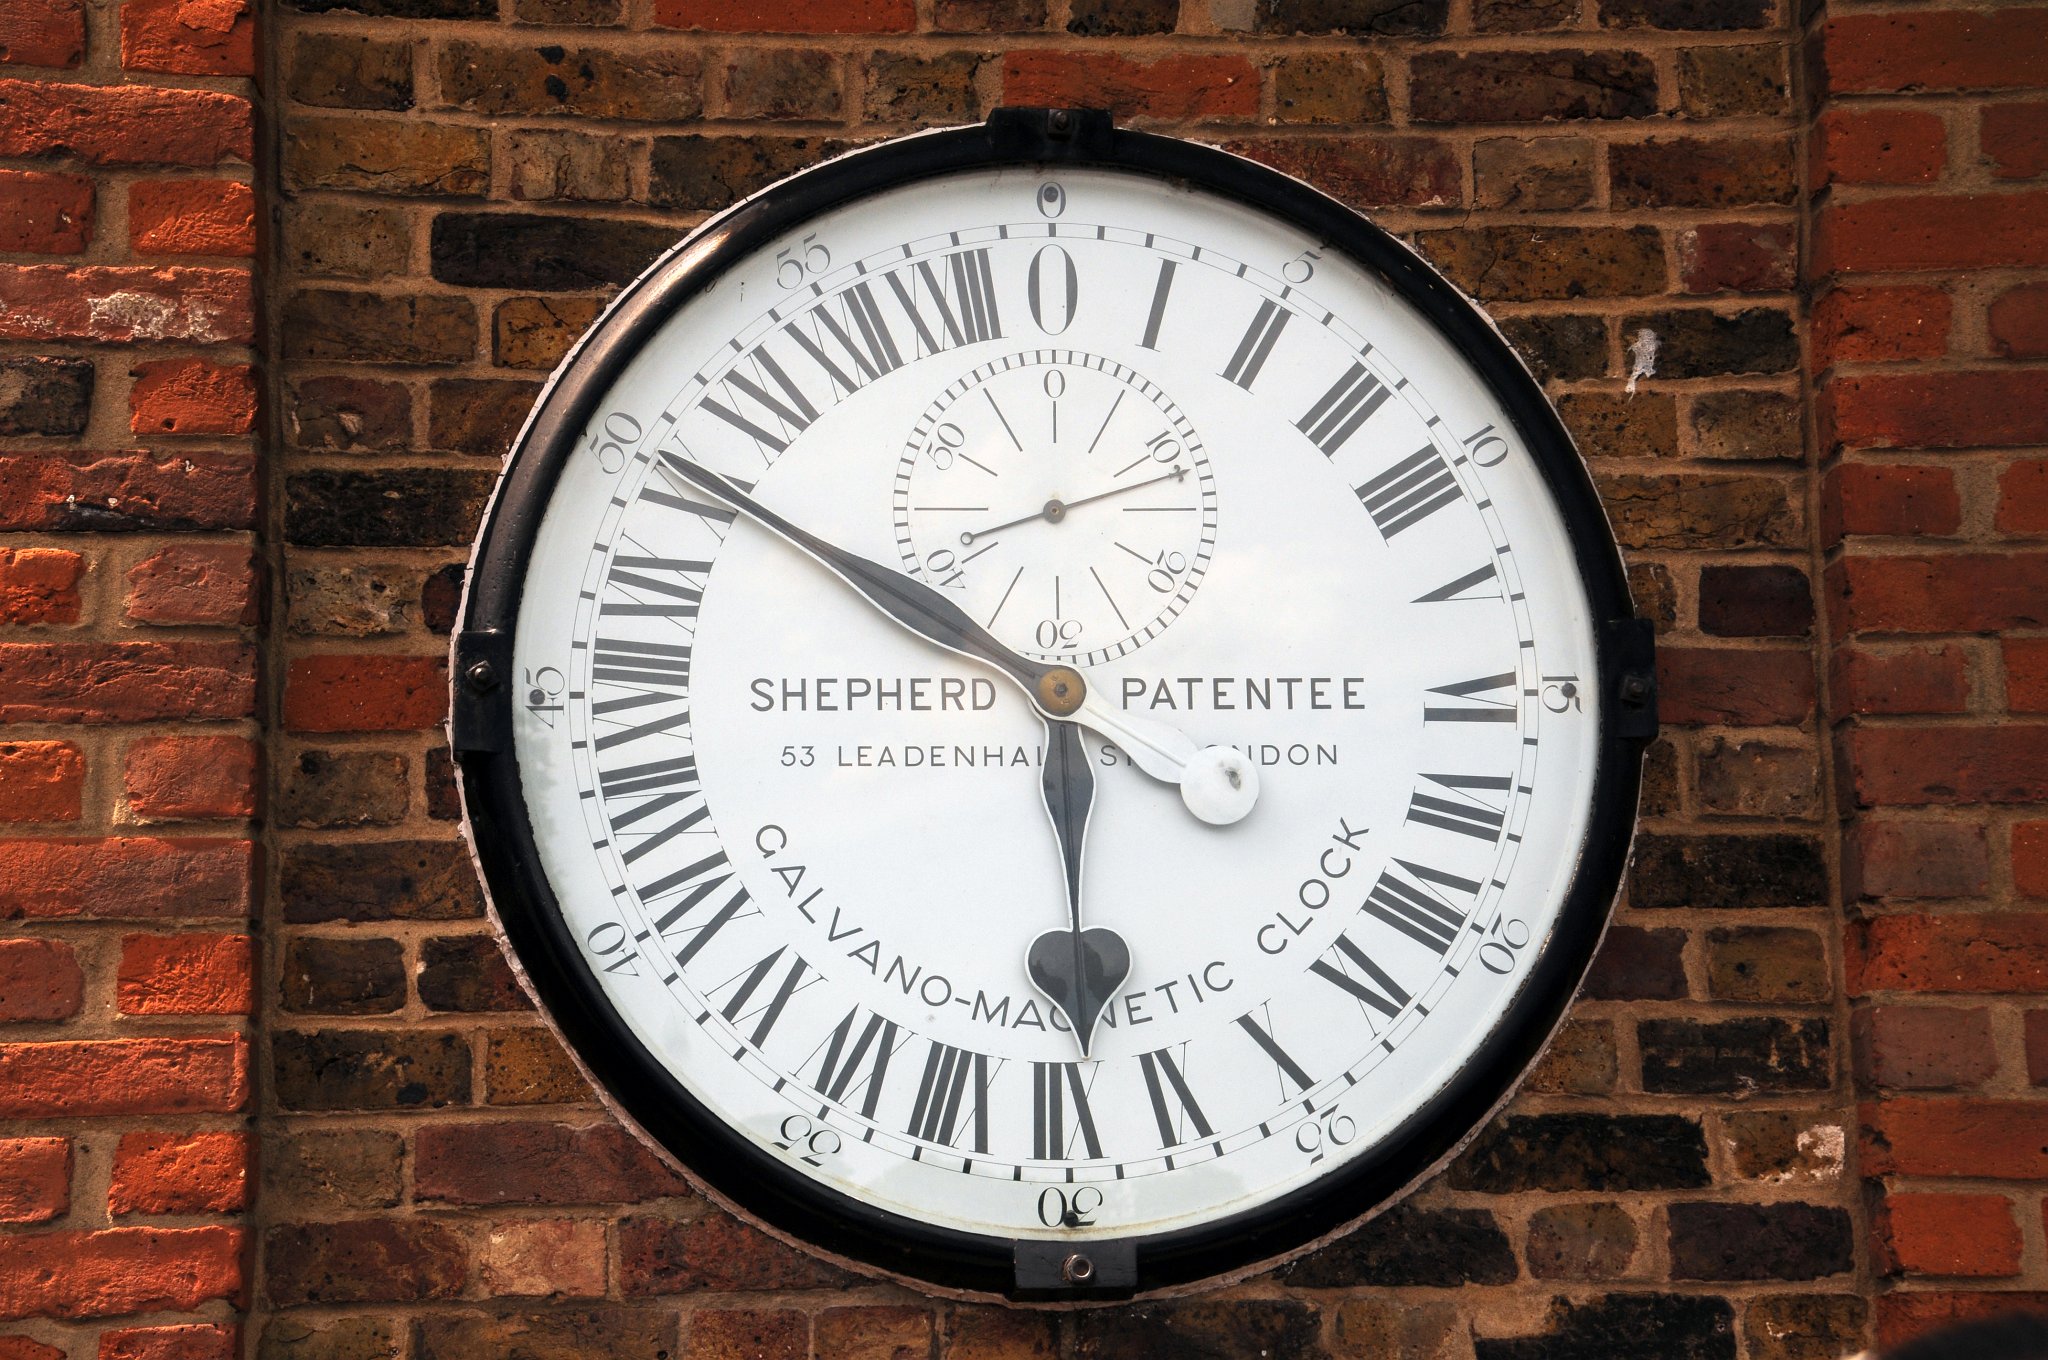 DSC_4084_1.jpg - Toto jsou jedny z první elektricky poháněných veřejných hodin, které byly na tomto místě instalovány v roce 1852. Číselník vždy zobrazuje Greenwichský hlavní čas (Greenwich Mean Time). Ten byl jedno období založen na měření času v této observatoři. Hodiny jsou ve 24 hodinovém formátu, kdy hodinová ručička je v pravé poledne v dolní části ciferníku na XII a o půlnosti nahoře. Hodiny ukazují přesný čas na 0,5 sekundy.